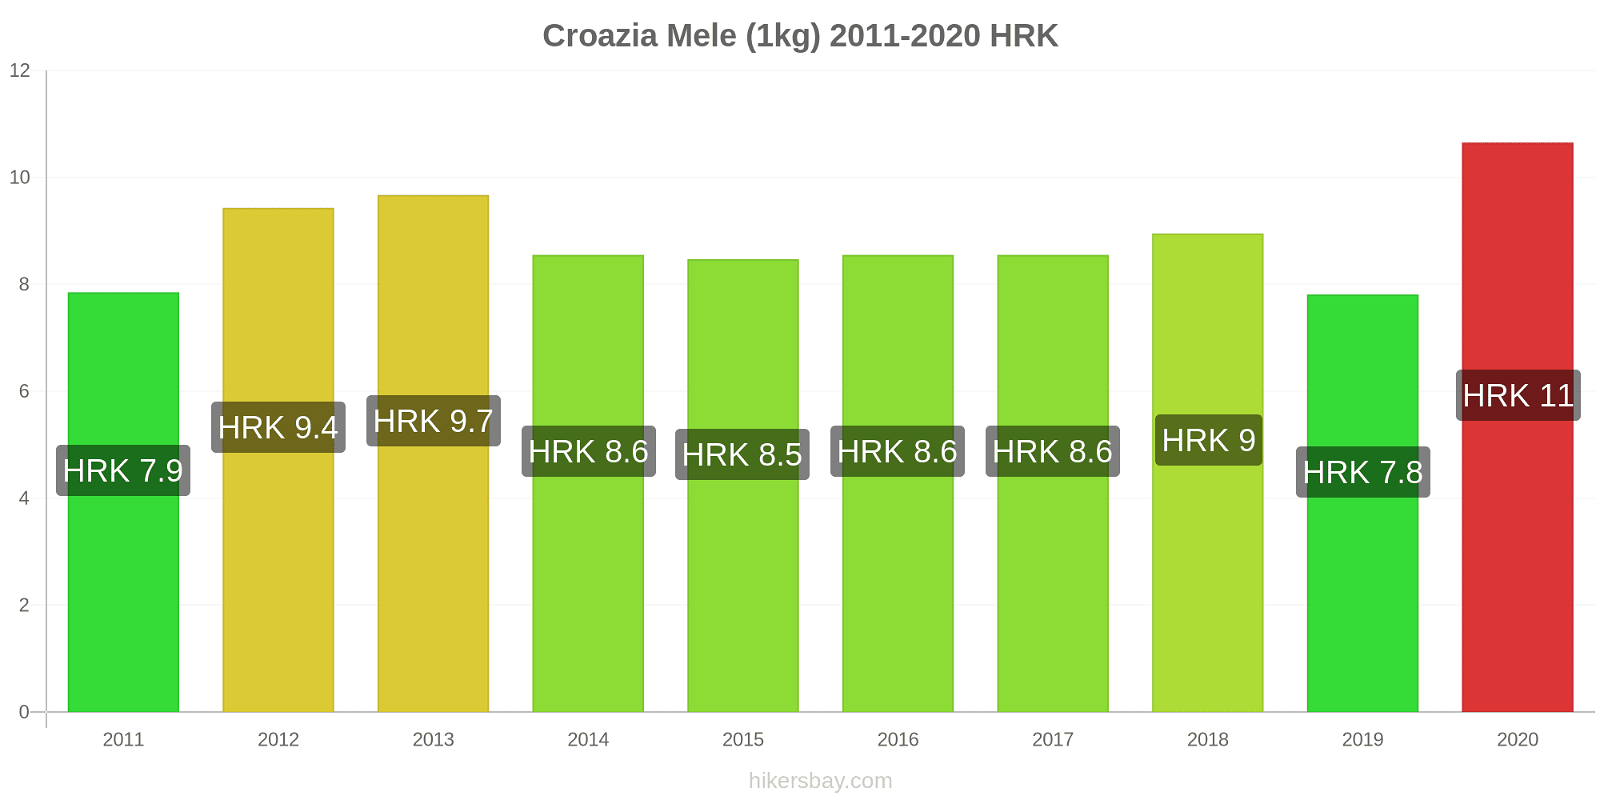 Croazia variazioni di prezzo Mele (1kg) hikersbay.com